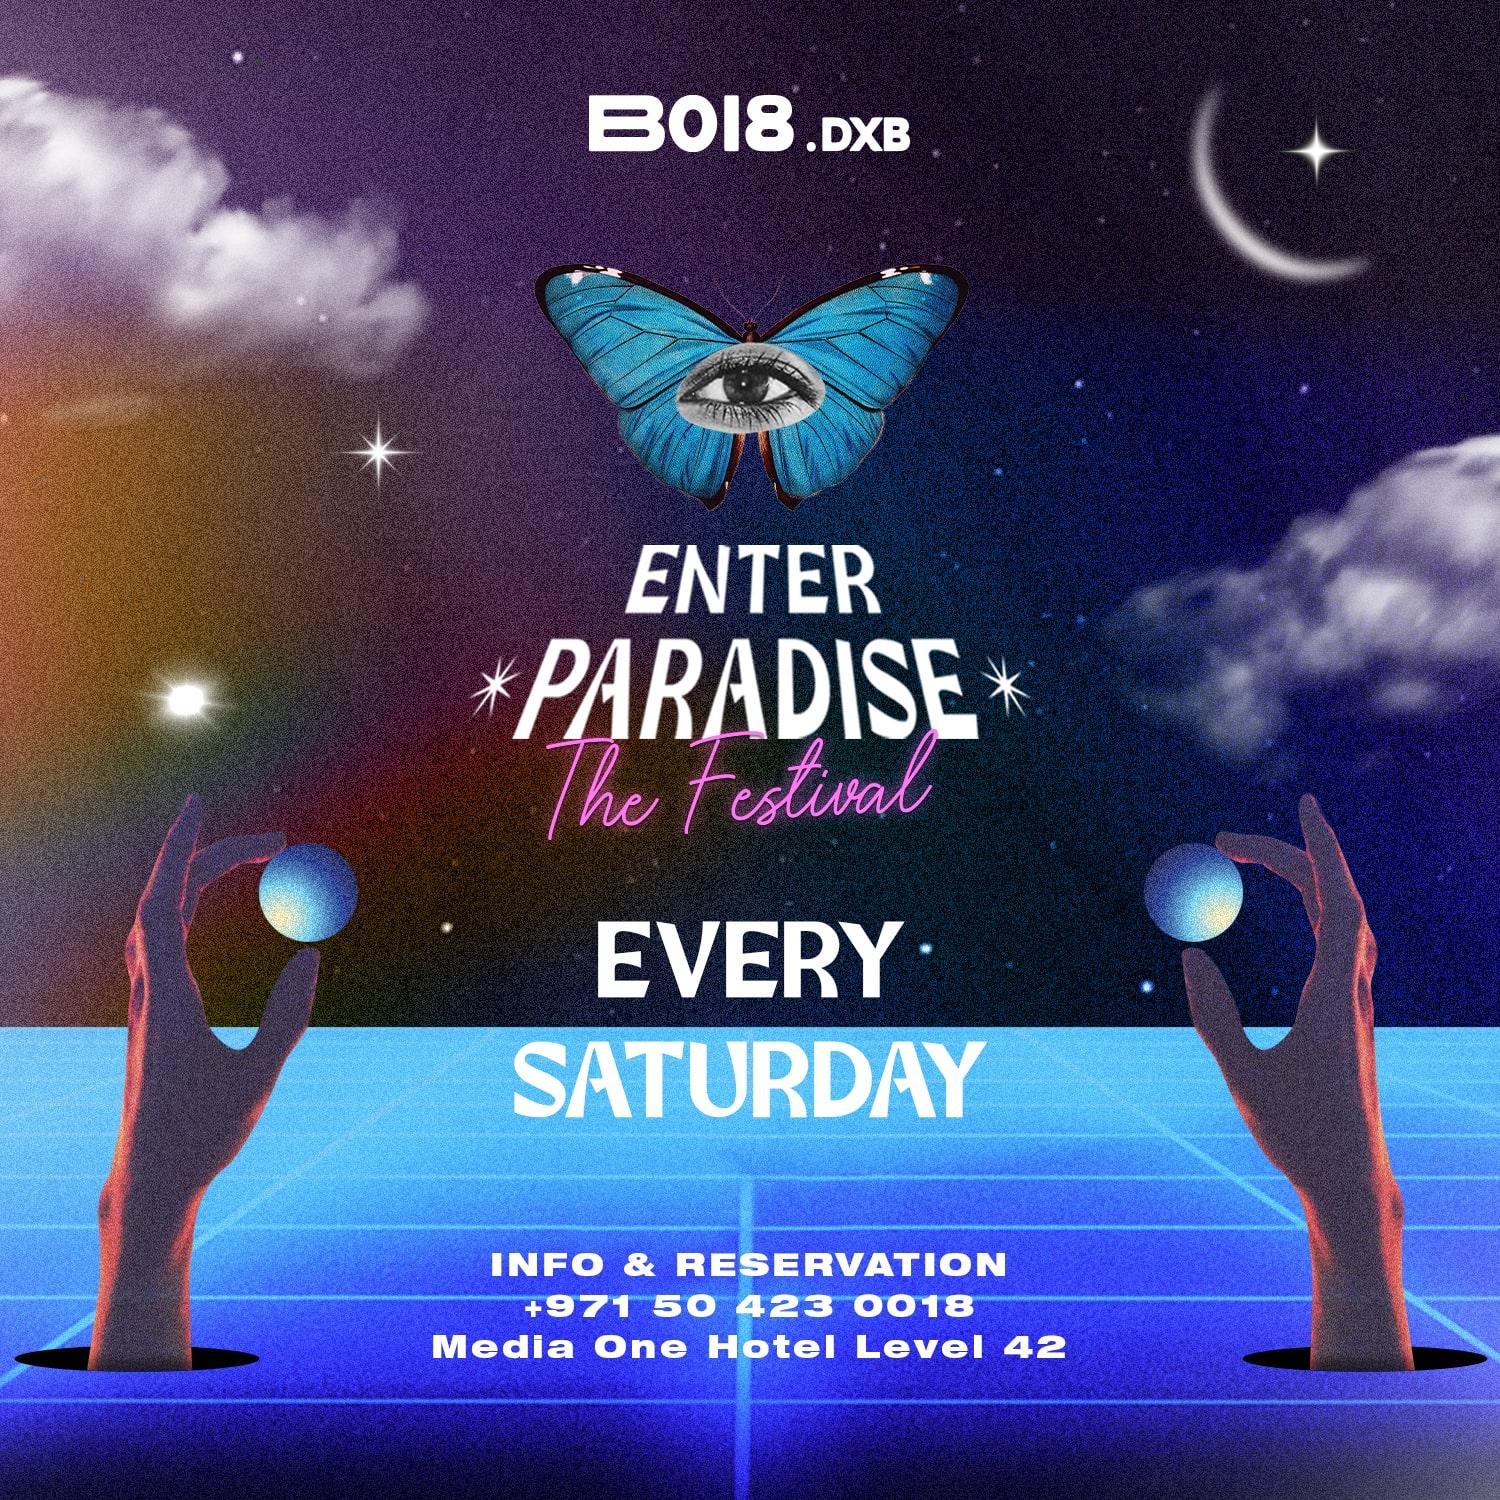 ENTER PARADISE at B018